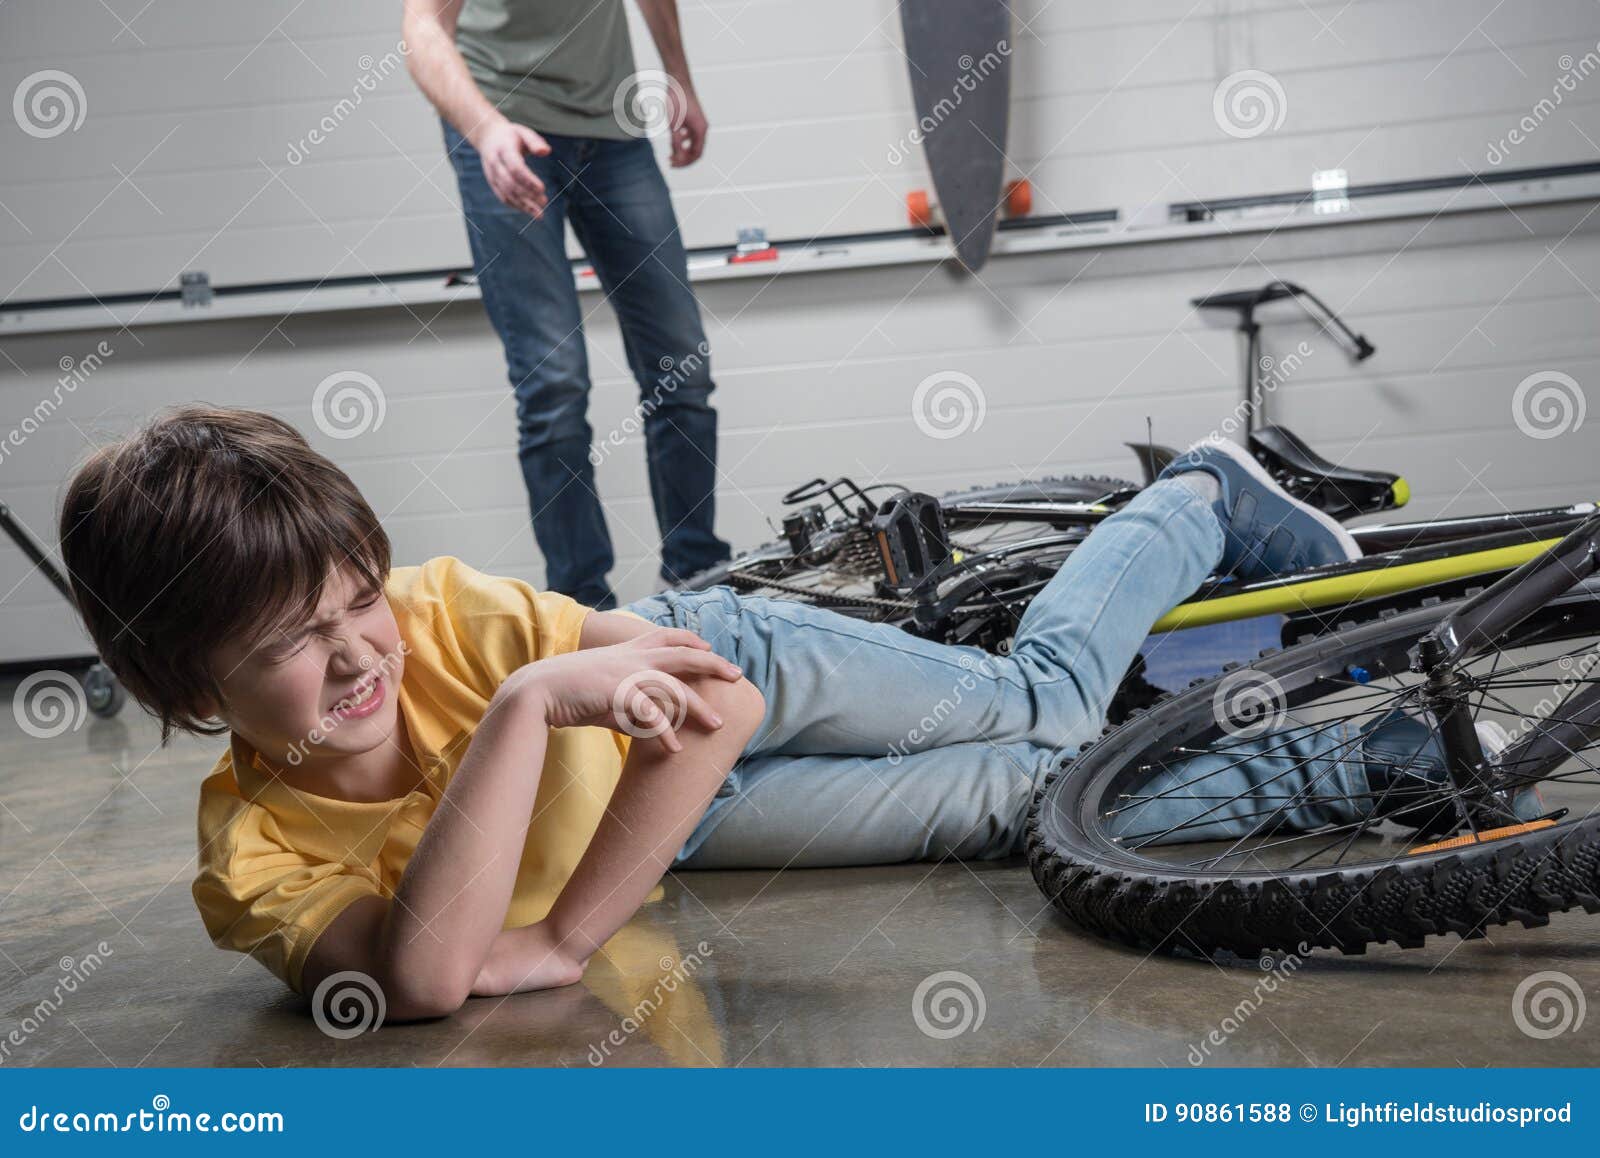 Упал заплакал. Мальчик упал с велосипеда. Мальчики и сломанный велосипед. Мальчик упал с велочэсипеоа. Мальчик падает.